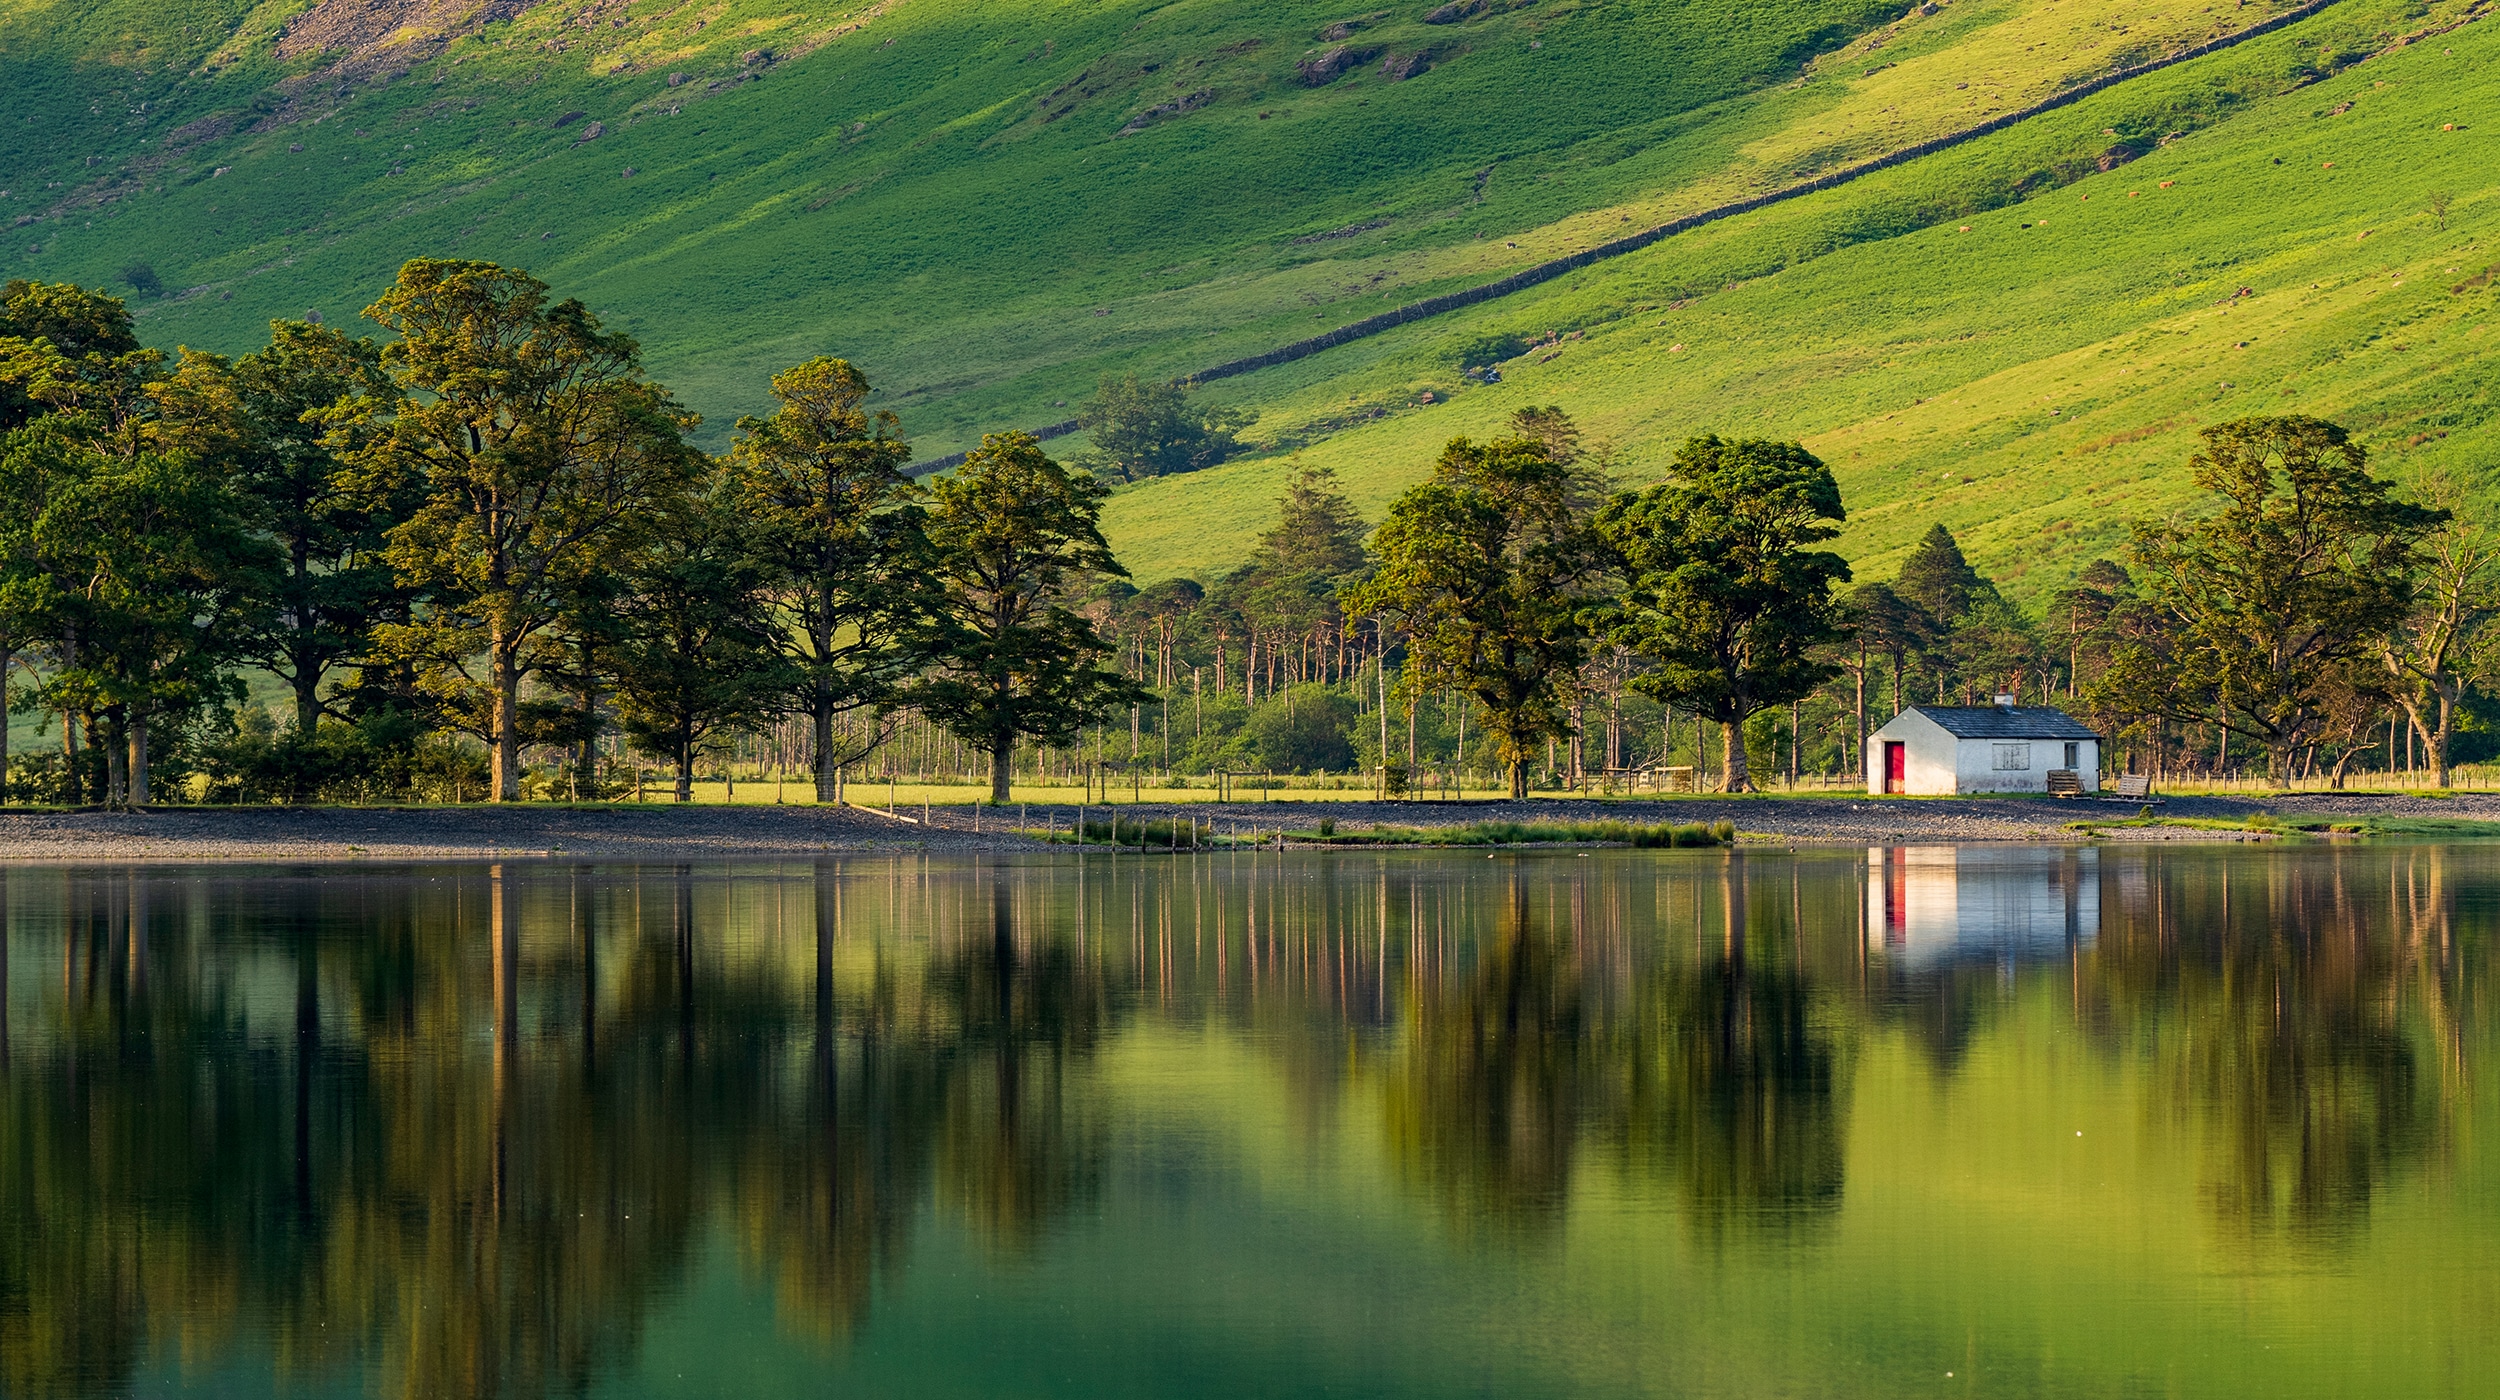 Lake District. Image: Jordan Banks